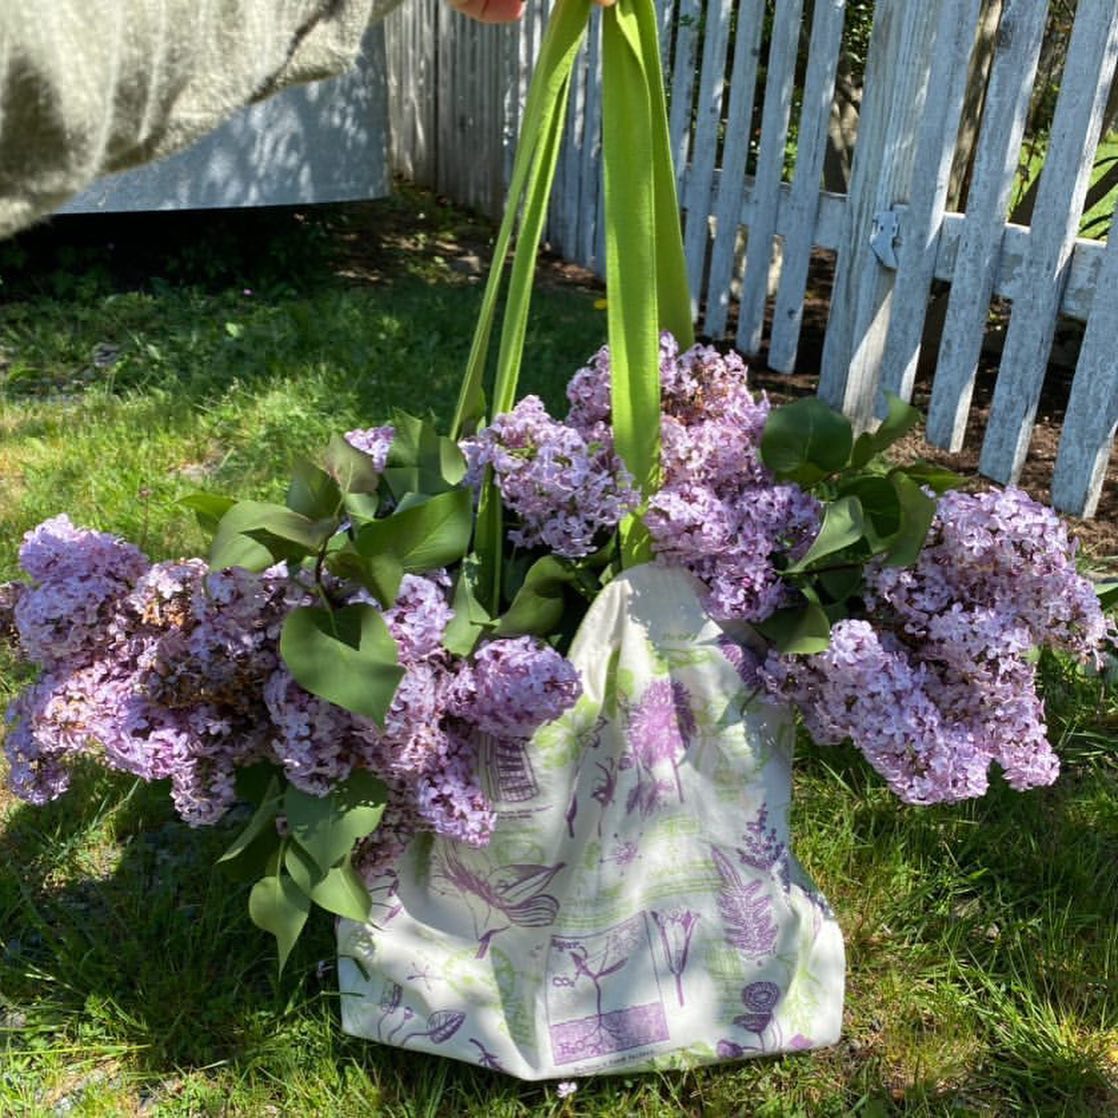 Shoulder bag botanical plants - Fairy Positron